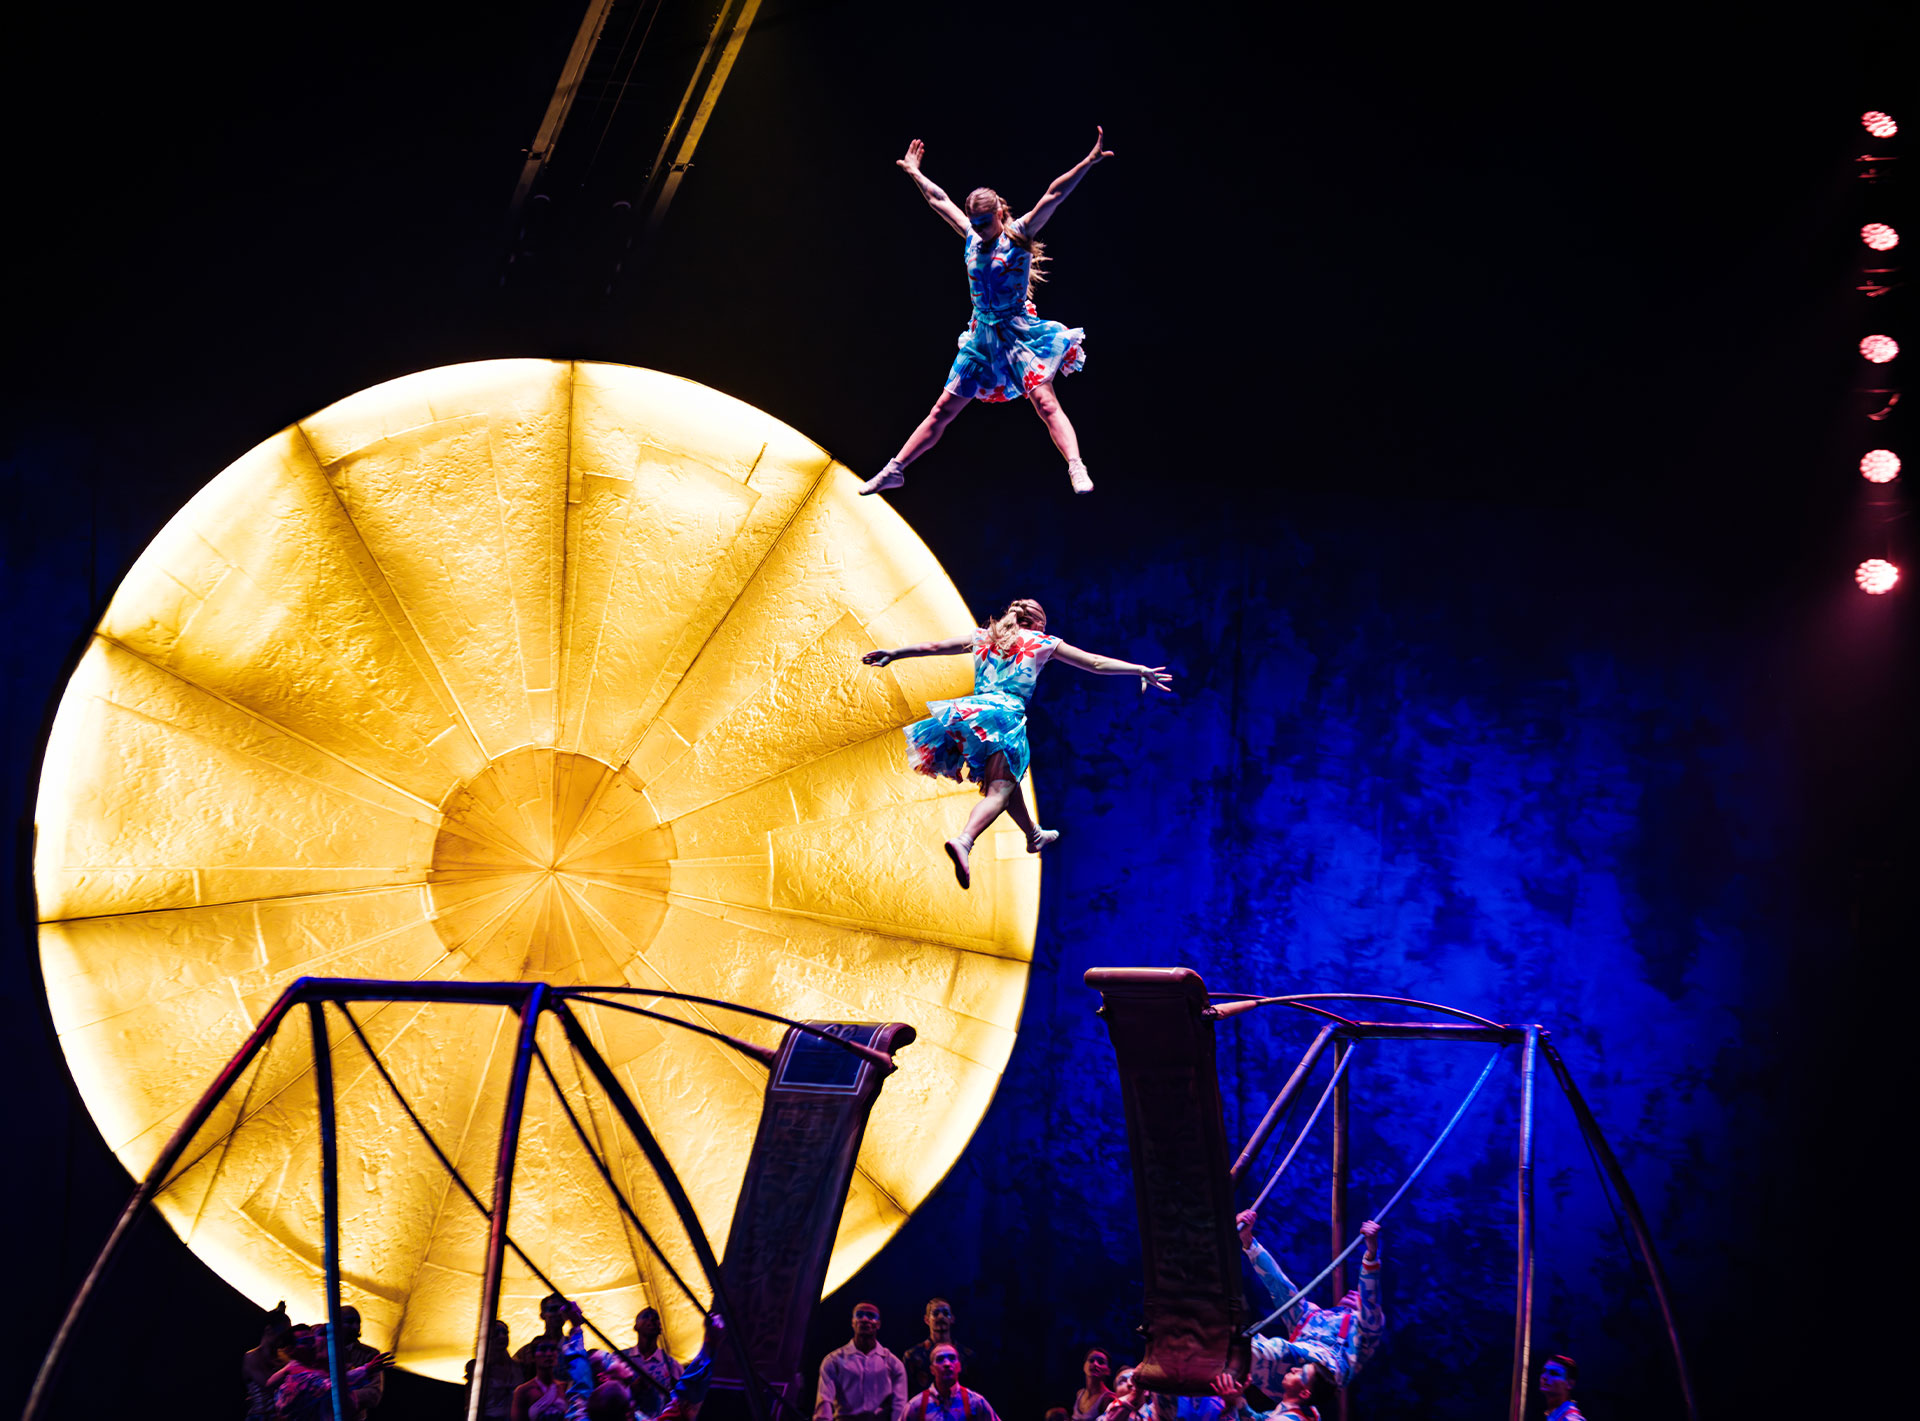 Zwei Akrobaten in bunten Kostümen schweben in der Luft vor einem großen, leuchtenden gelben Kreis auf einer Bühne.